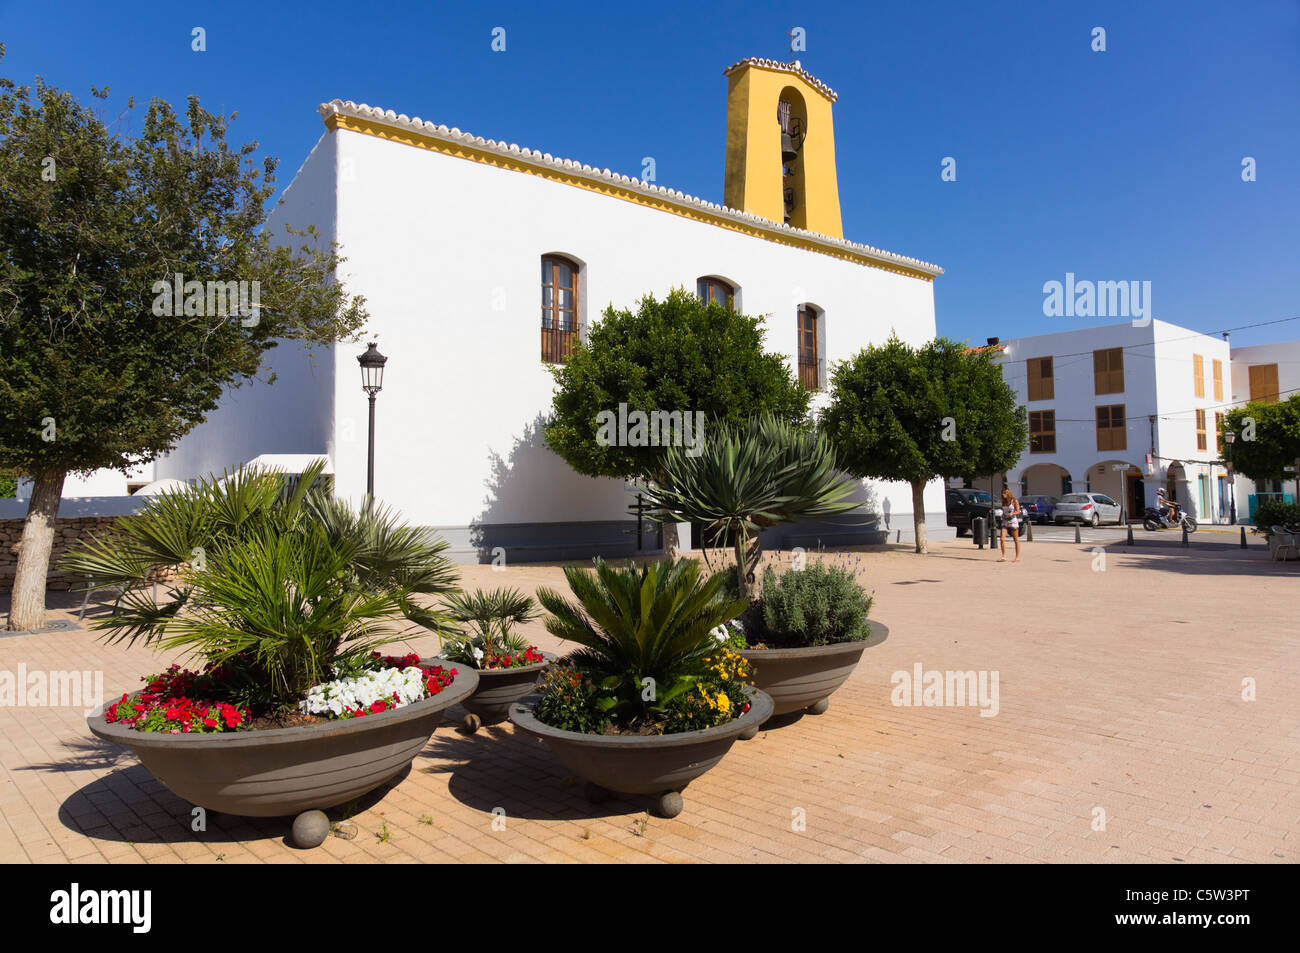 Ibiza, Baléares, Espagne - l'Europe centrale, les ville de Santa Gertrudis. L'église blanchis dans un carré d'orangers. Banque D'Images